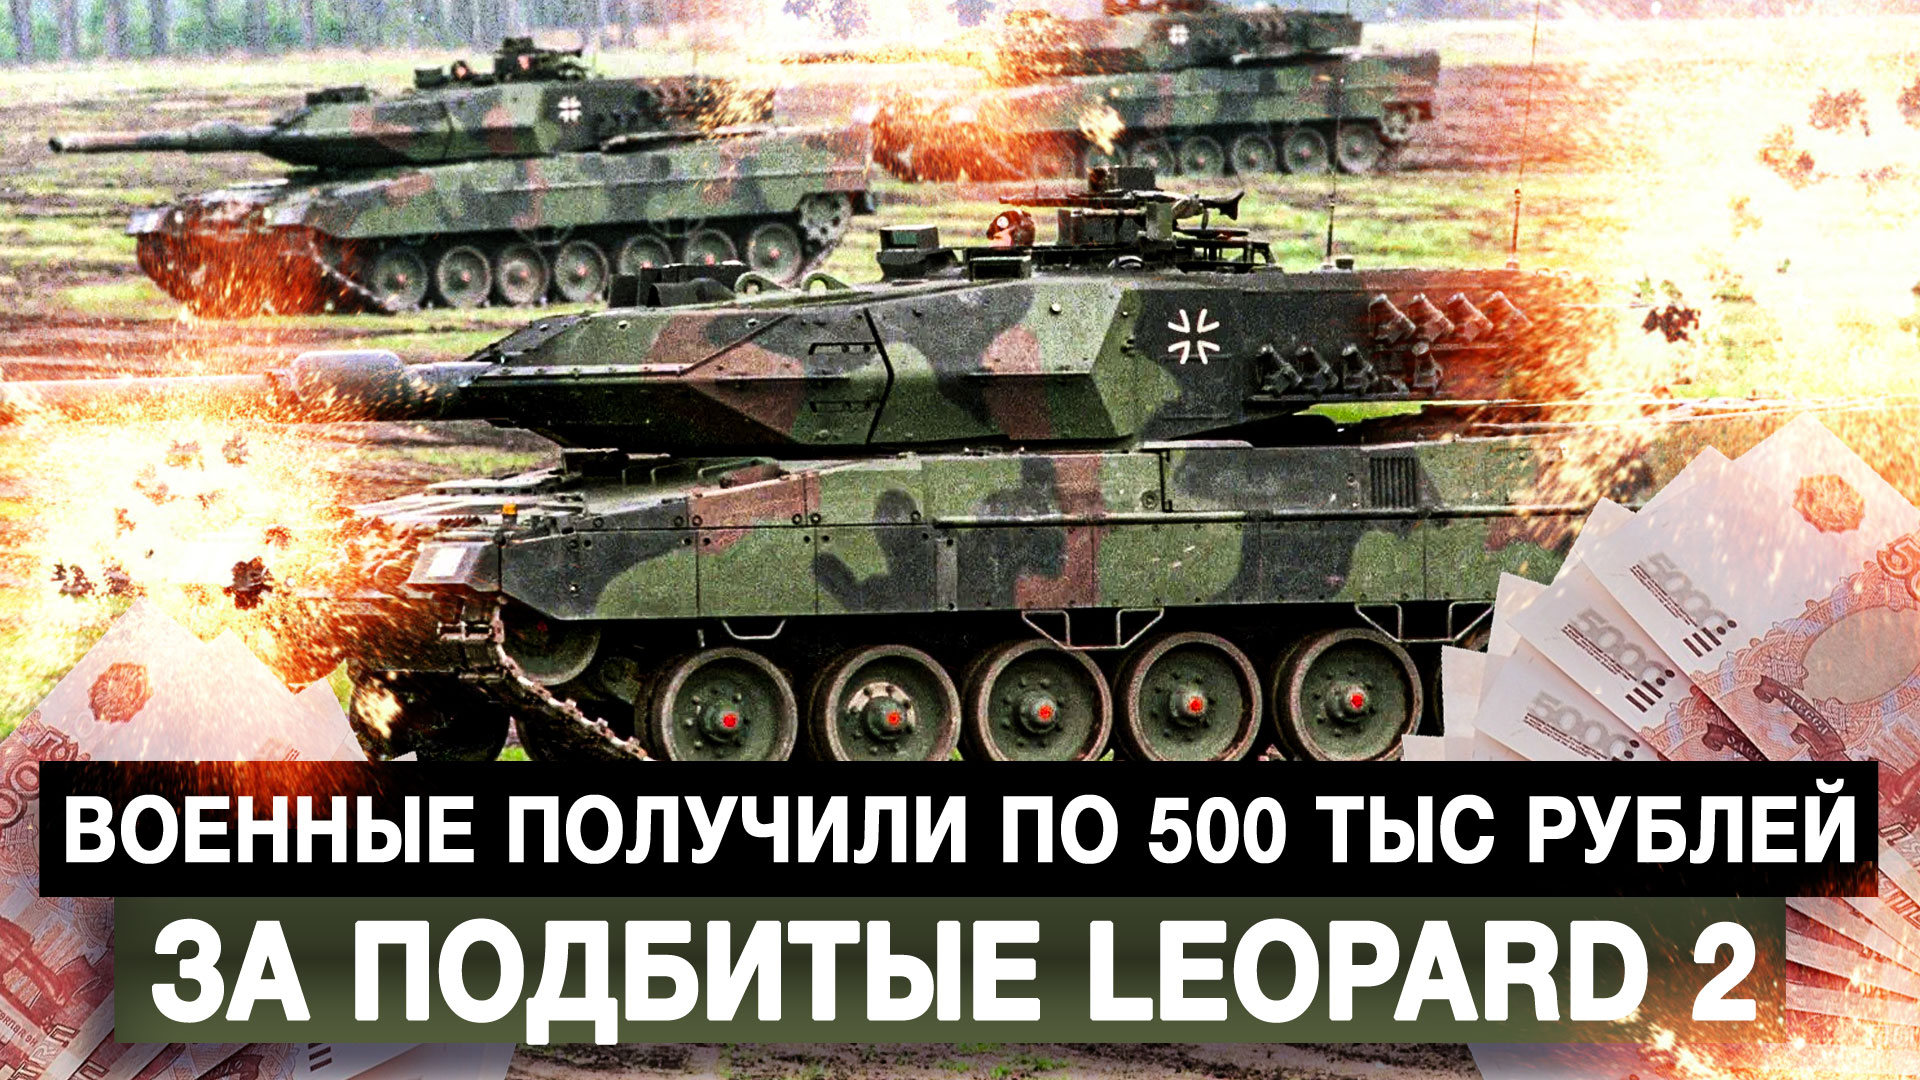 Военные получили по 500 тыс рублей за подбитые Leopard 2